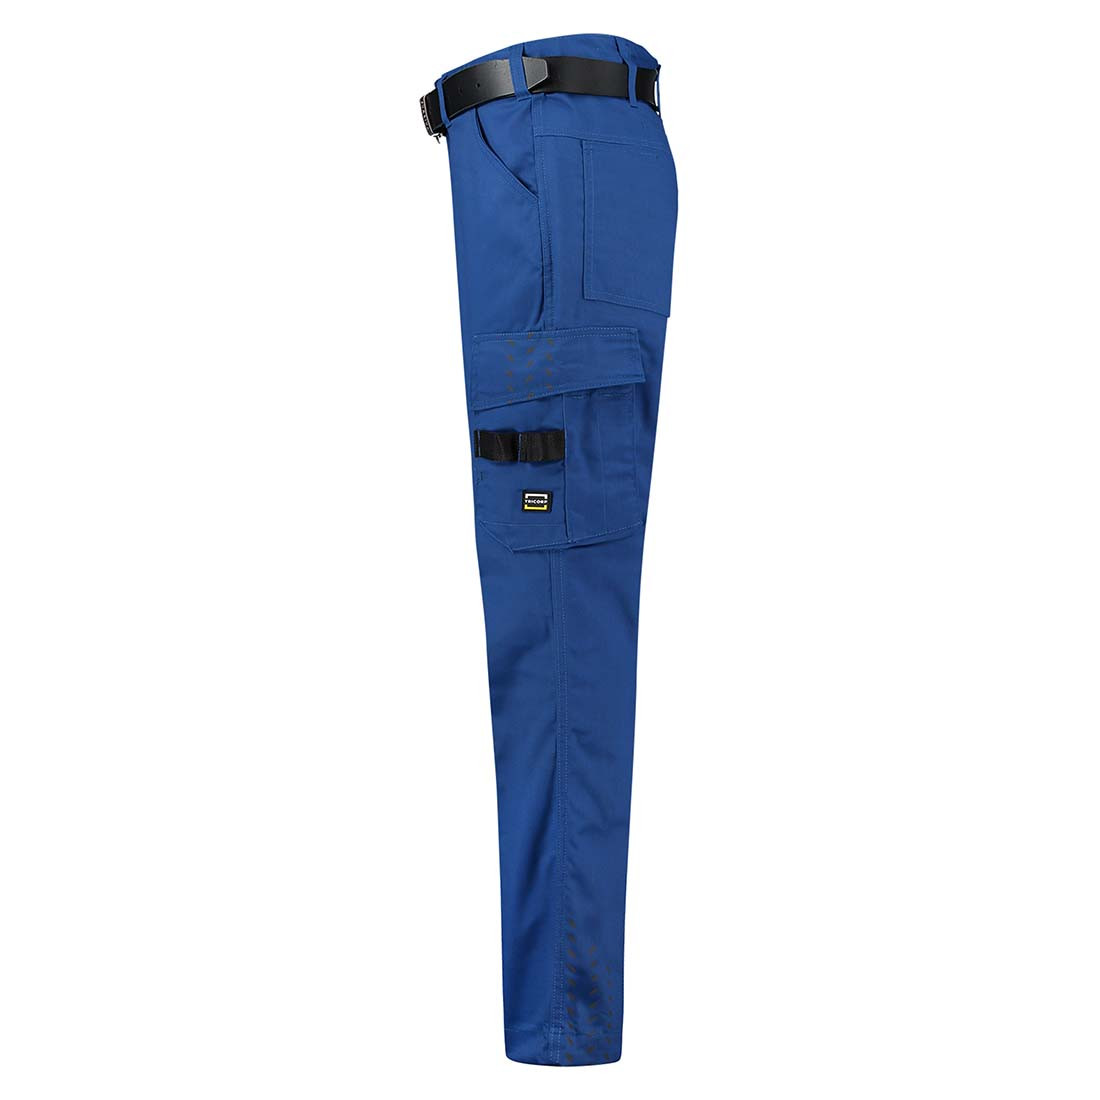 Pantalones de trabajo unisex - Ropa de protección